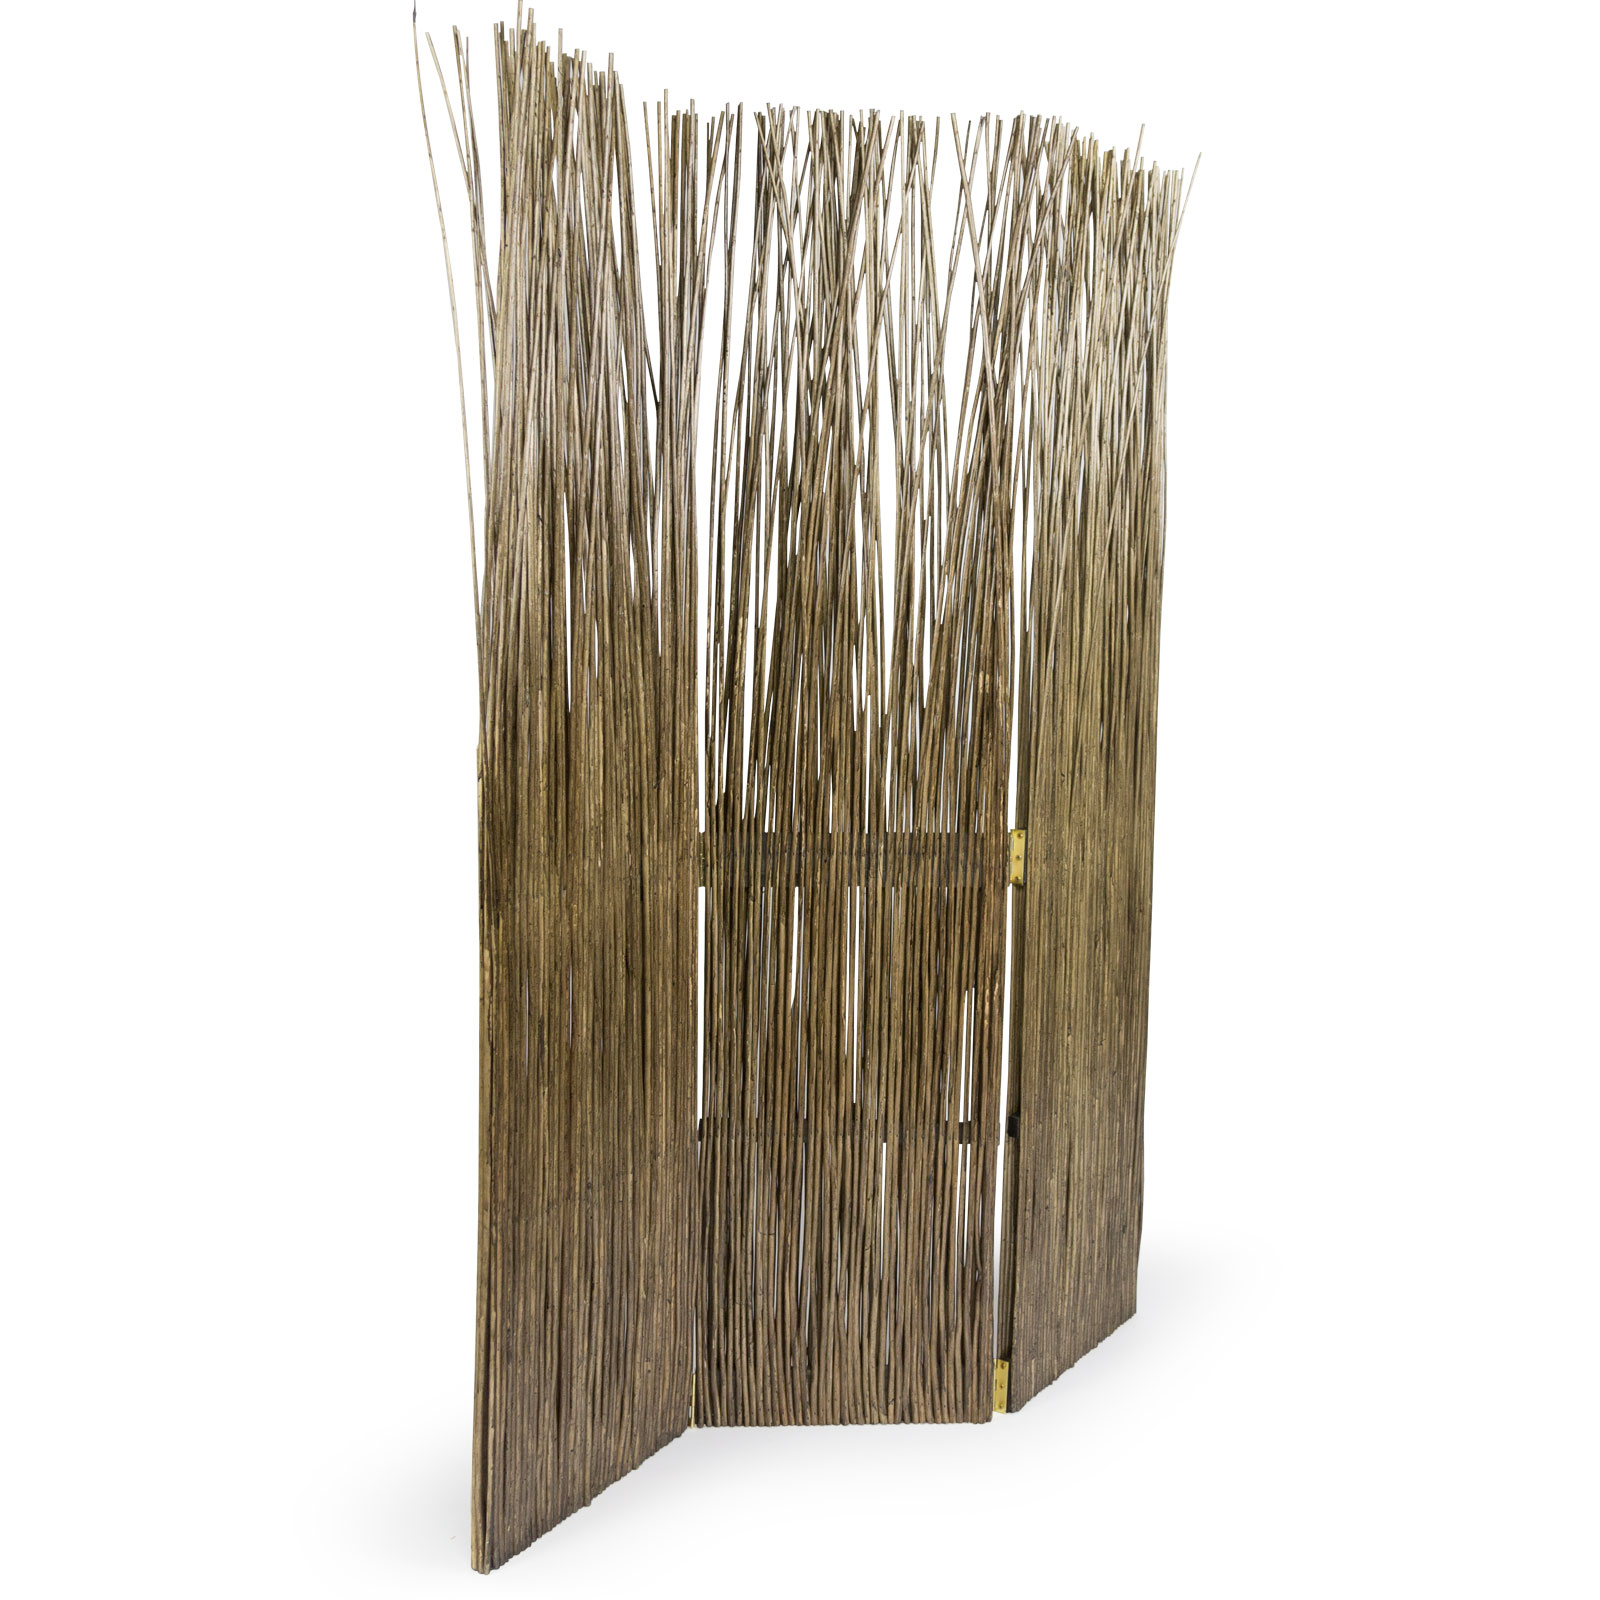 Paravent Raumteiler 3 teilig Holz Trennwand Sichtschutz Weidenparavent Braun Grau Natur